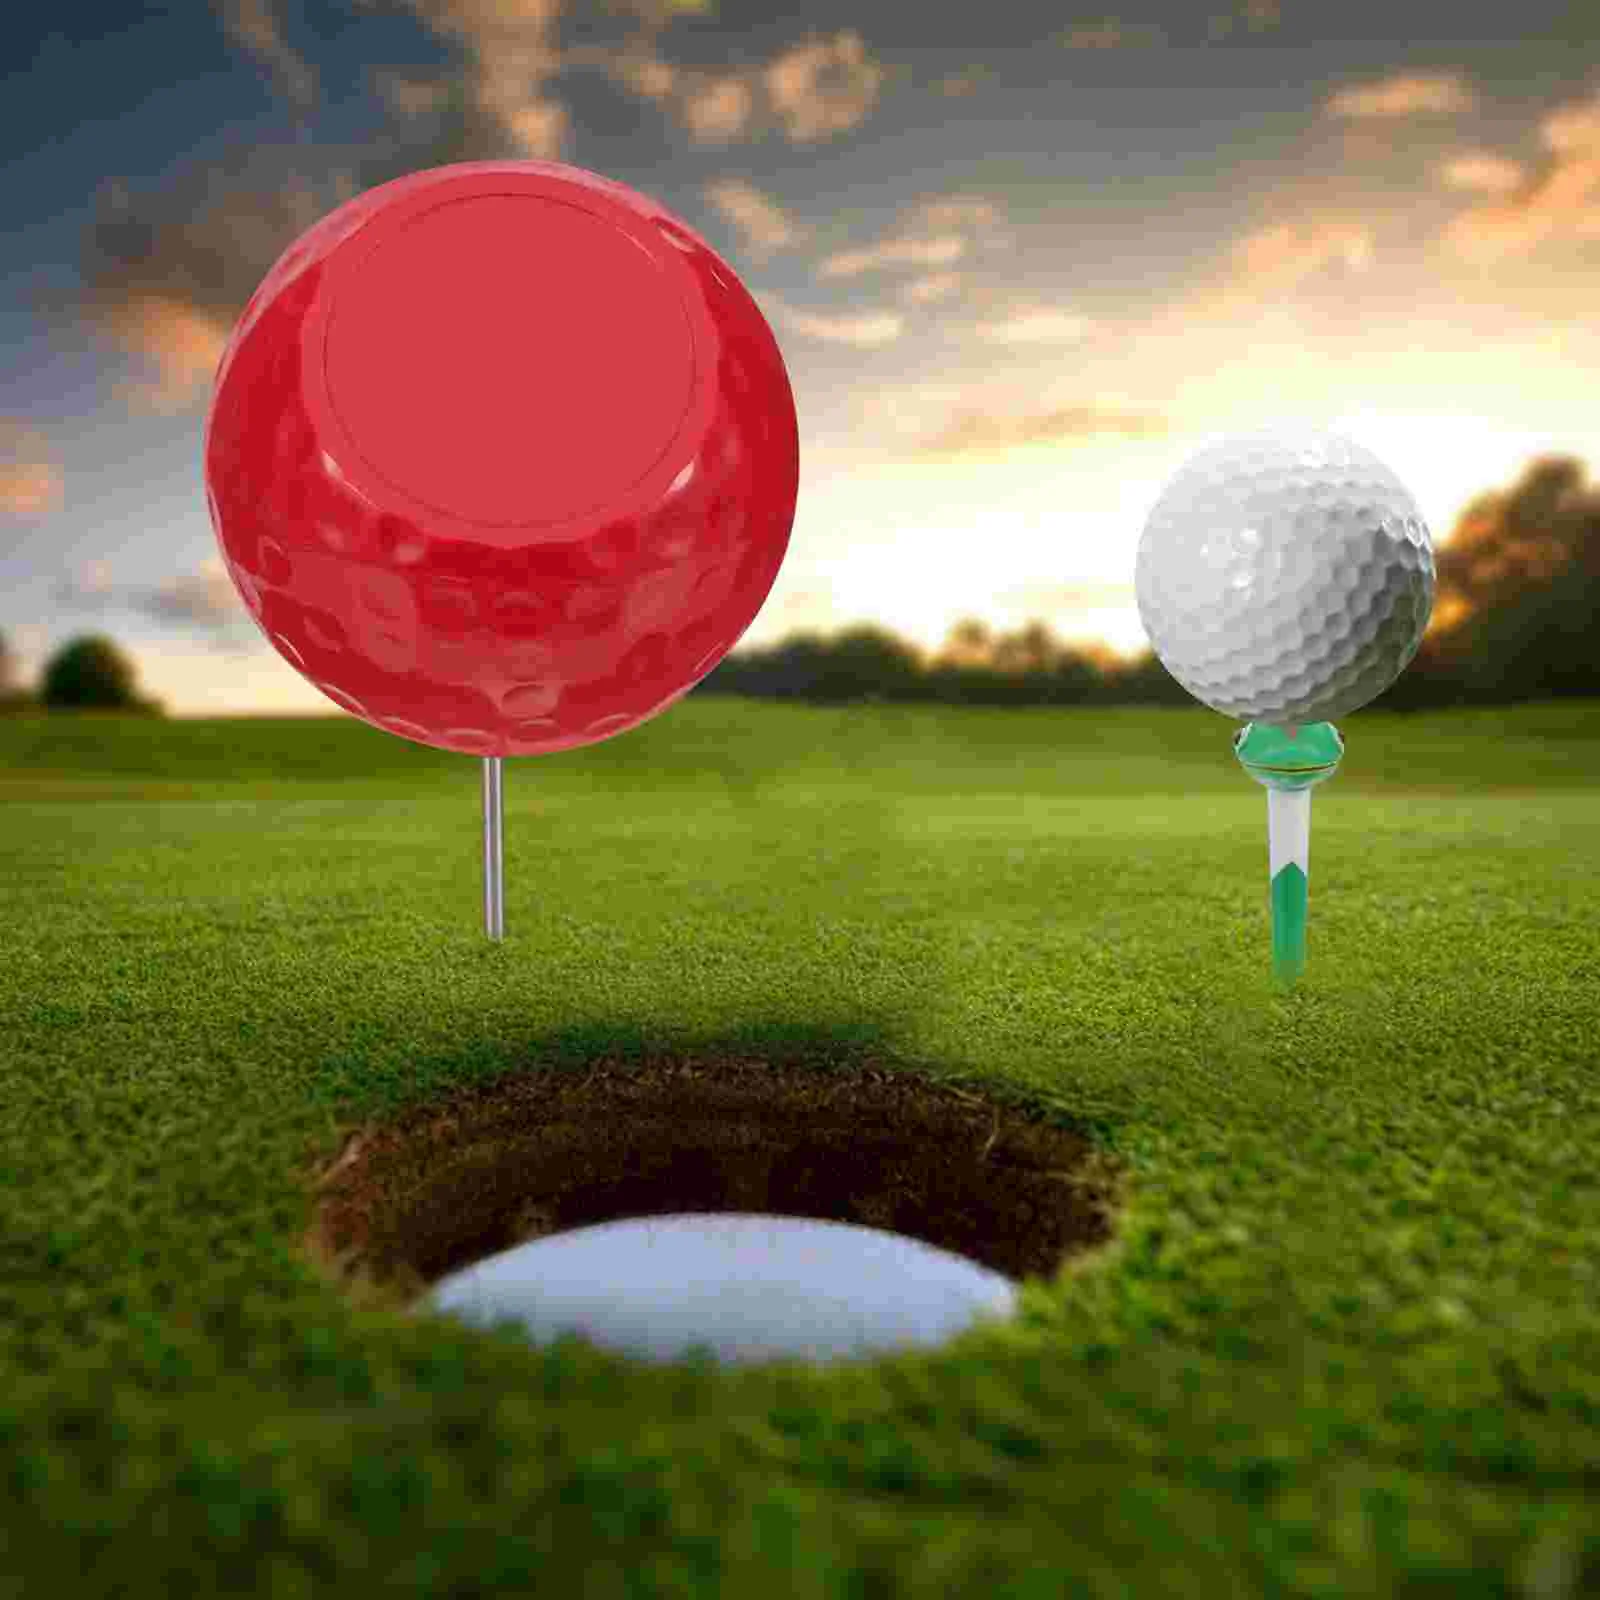 

Golf Tee Marker Golfs Court Marking Accessory Balls Position Golfing Ground Insert Maker Tool Supplies